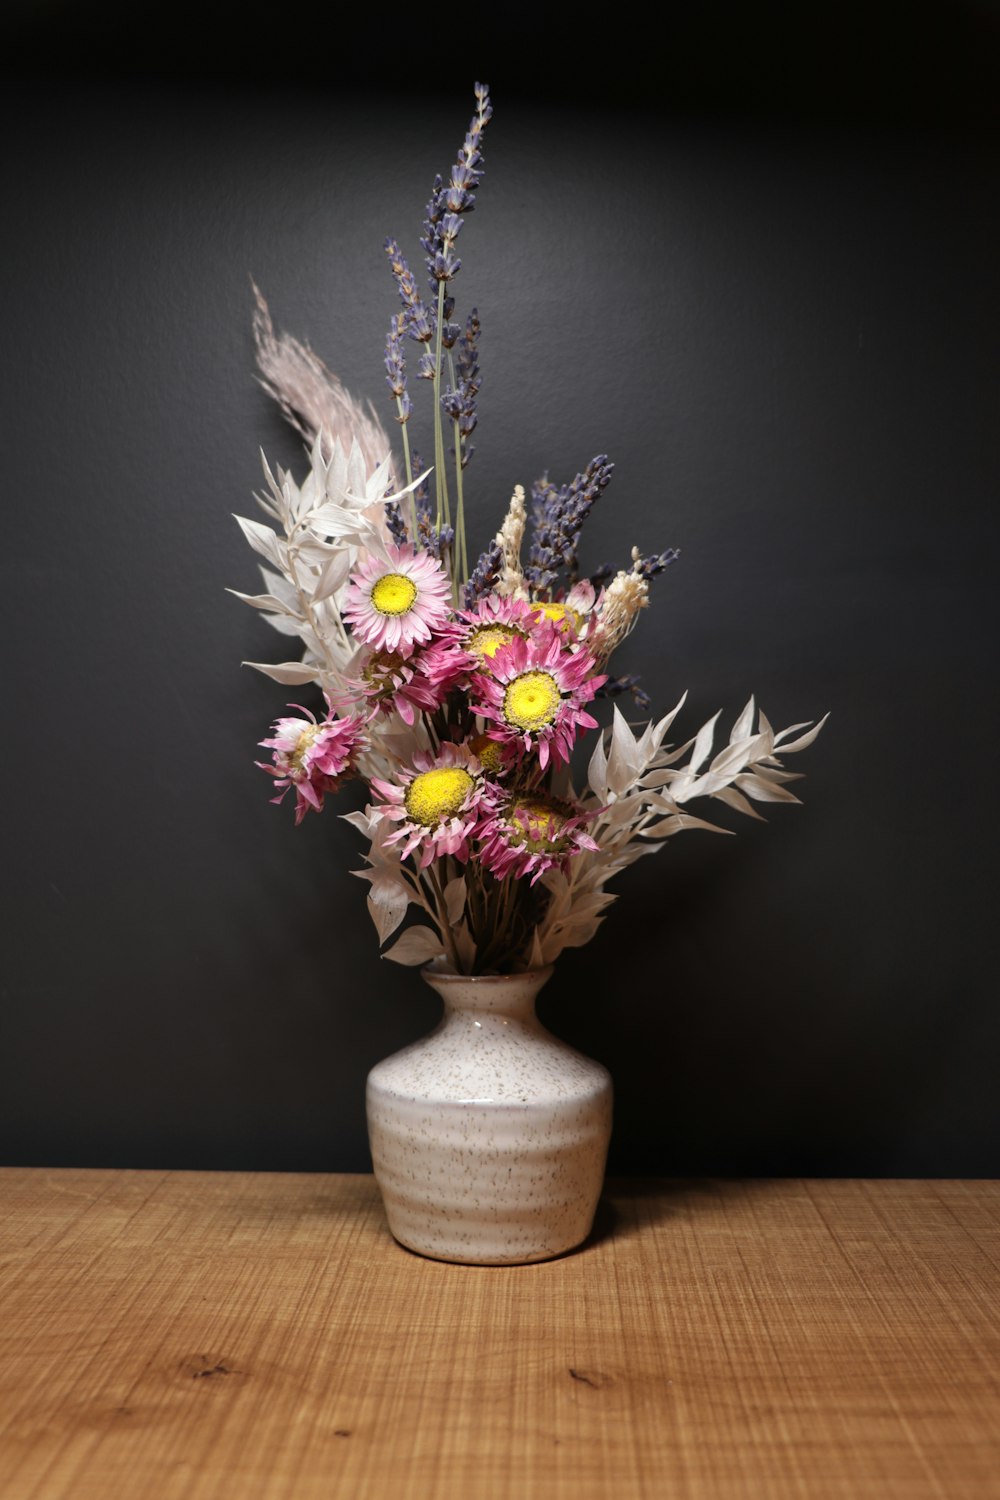 750+ Flower Vase Pictures [HD] | Download Free Images on Unsplash